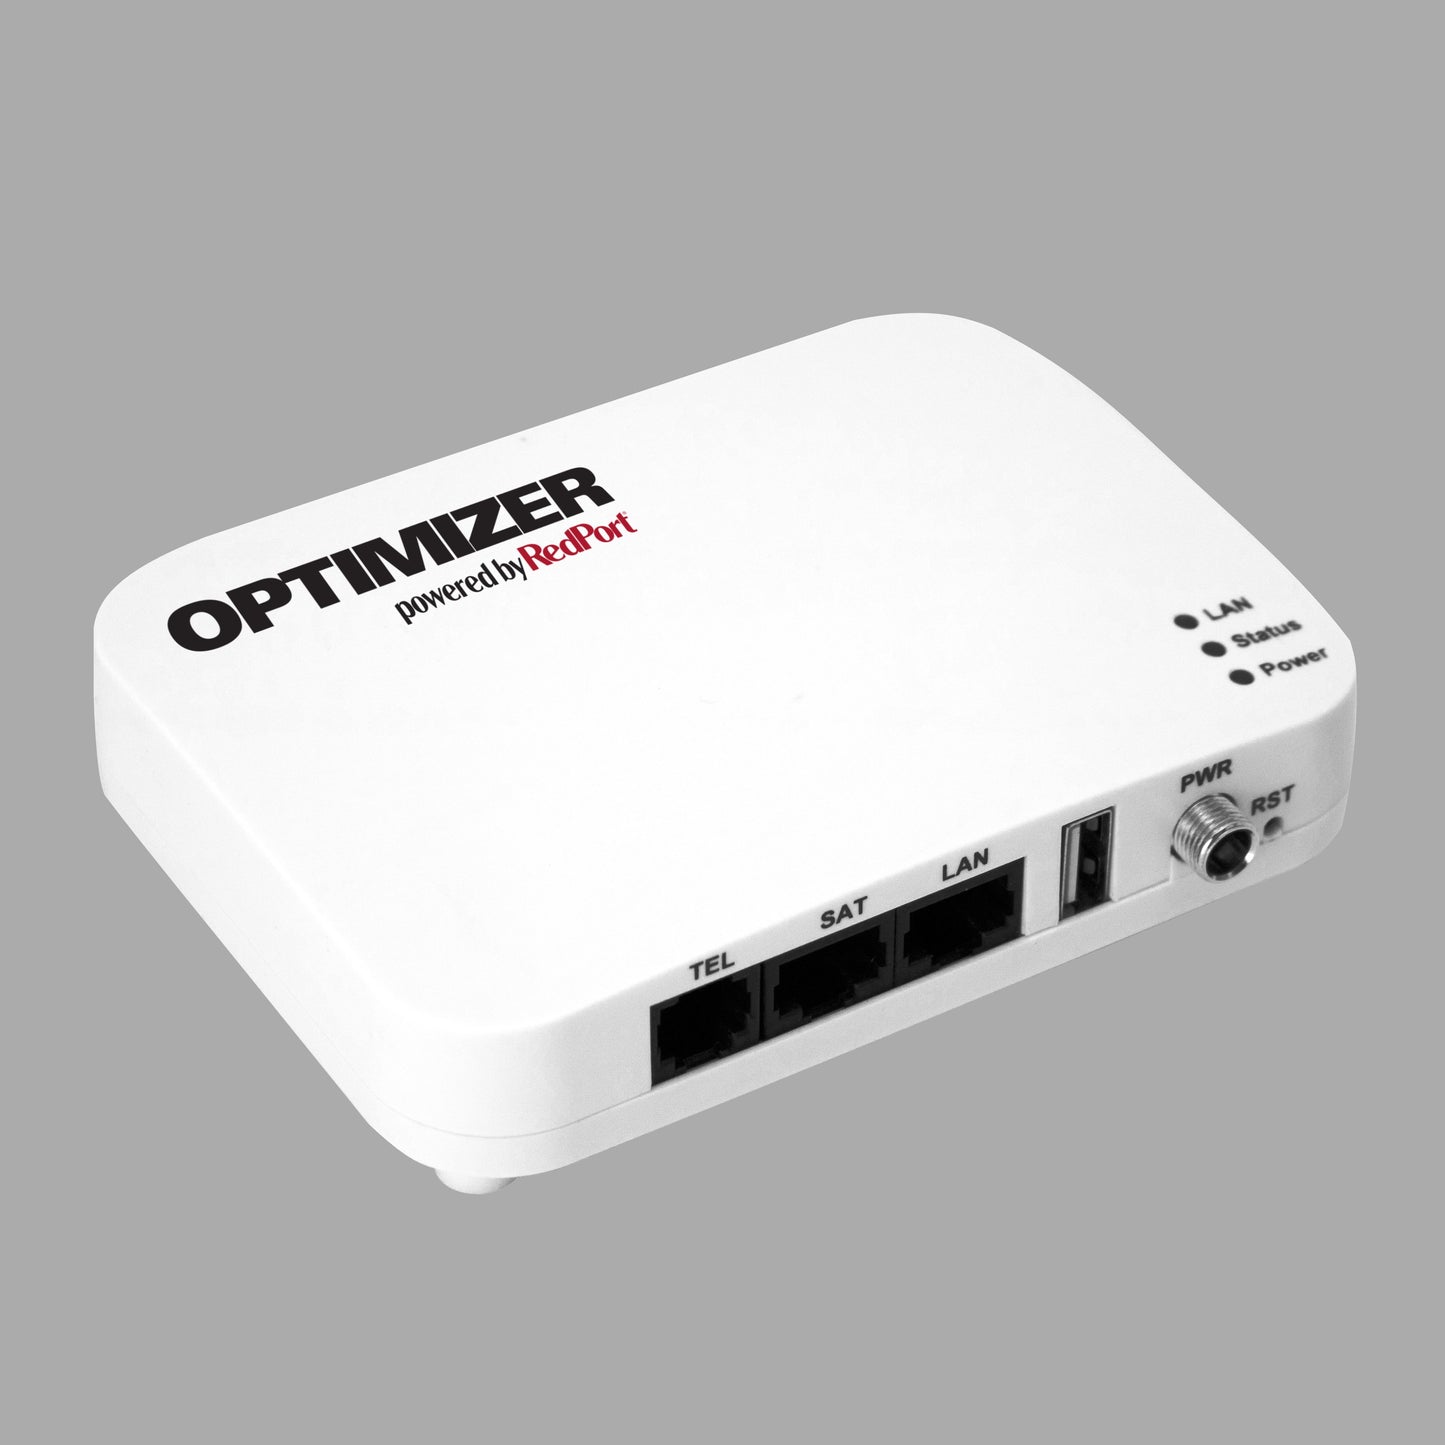 Optimizer Wi-Fi Router for Satellite Data Terminals WxA-223